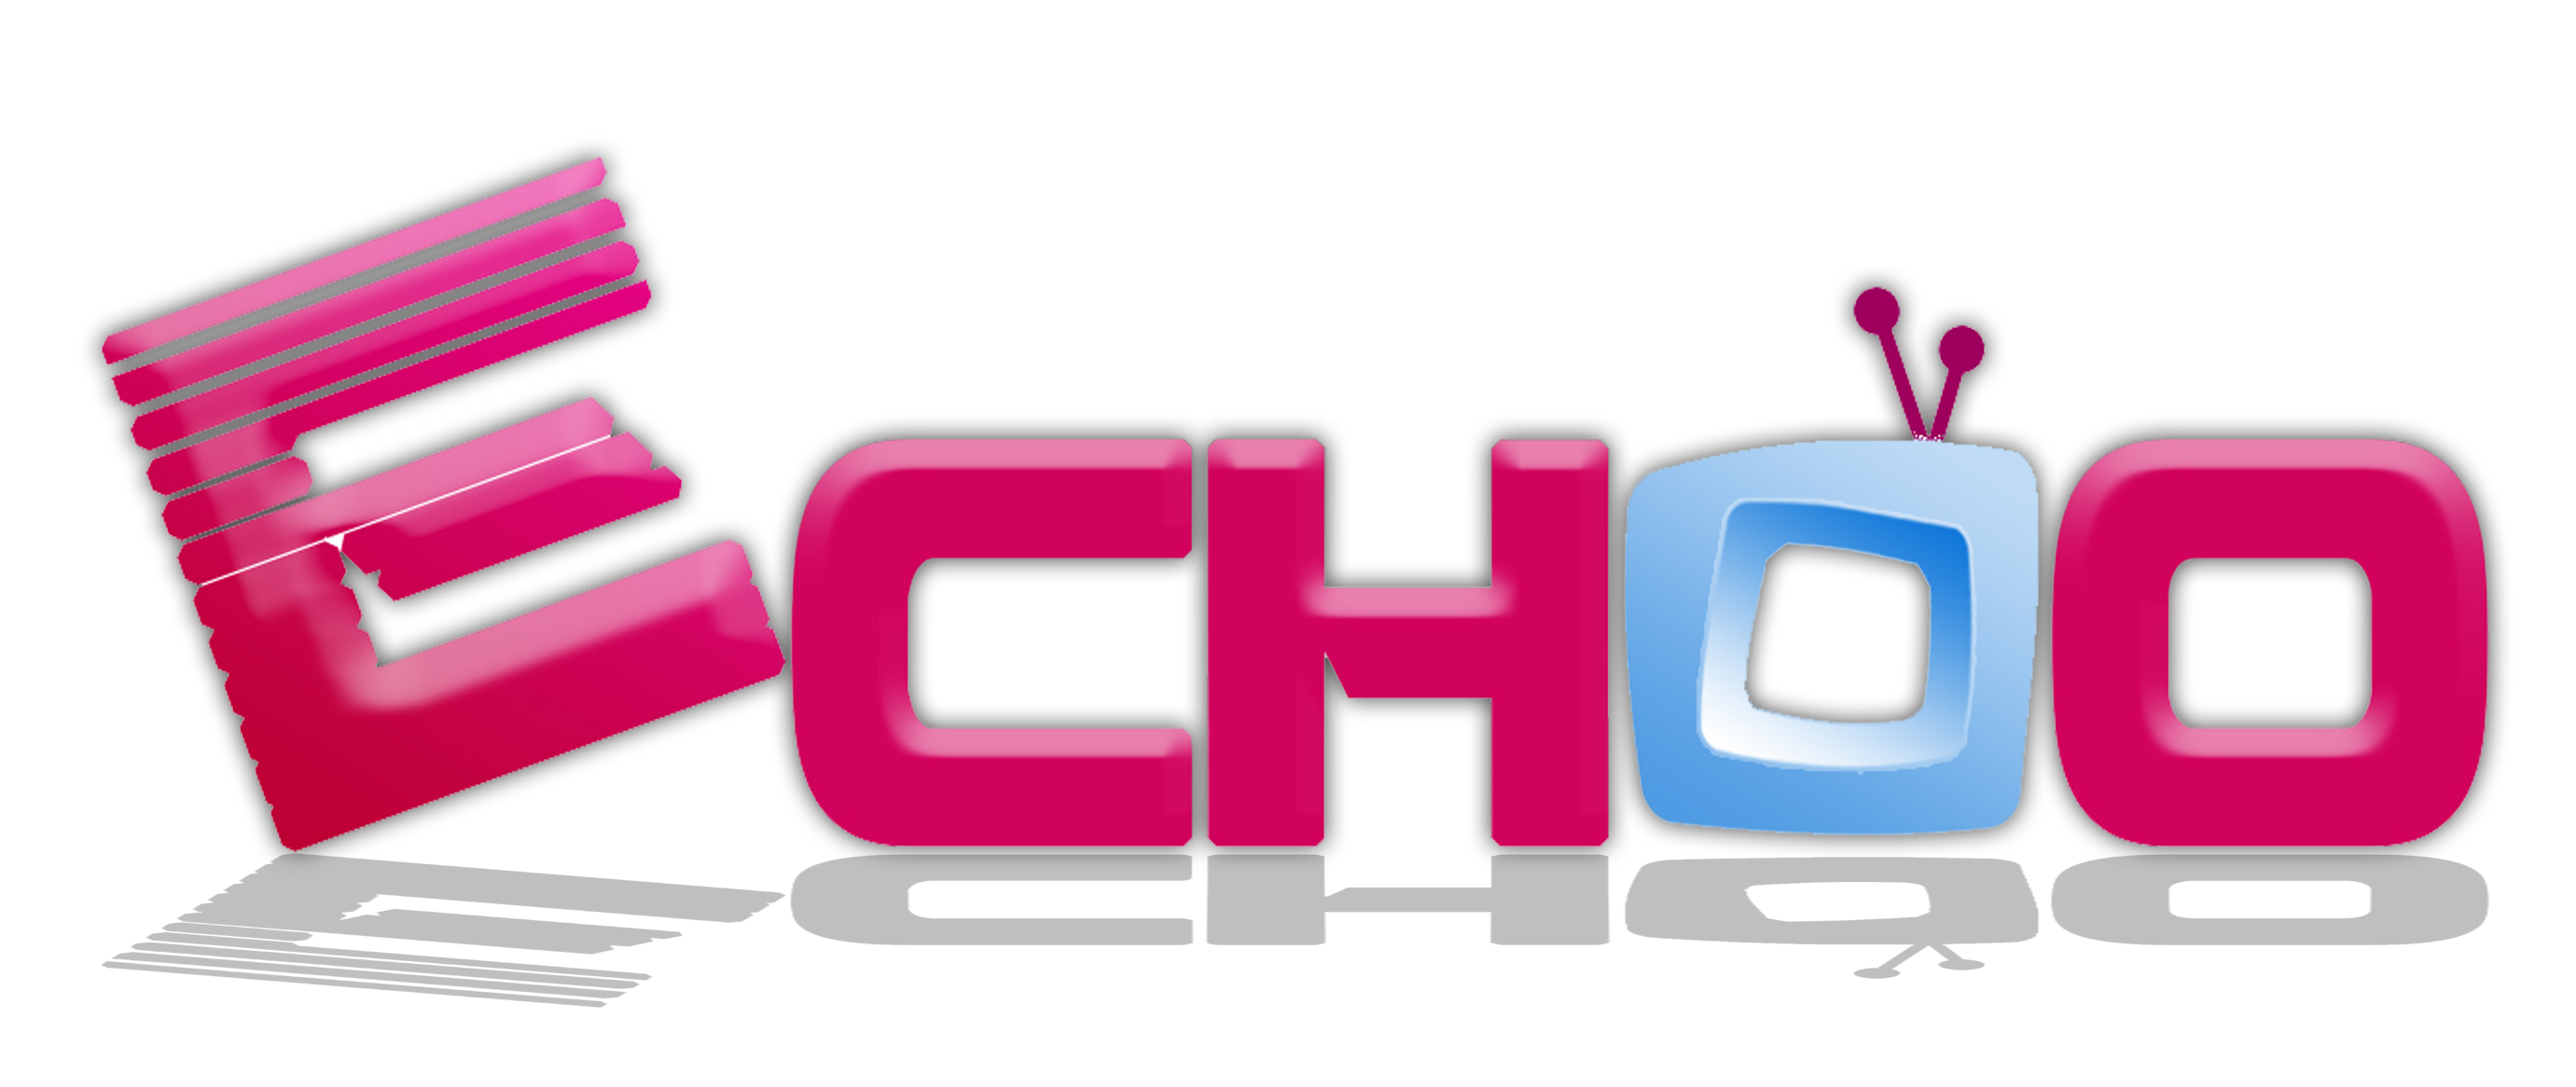 Echoo TV